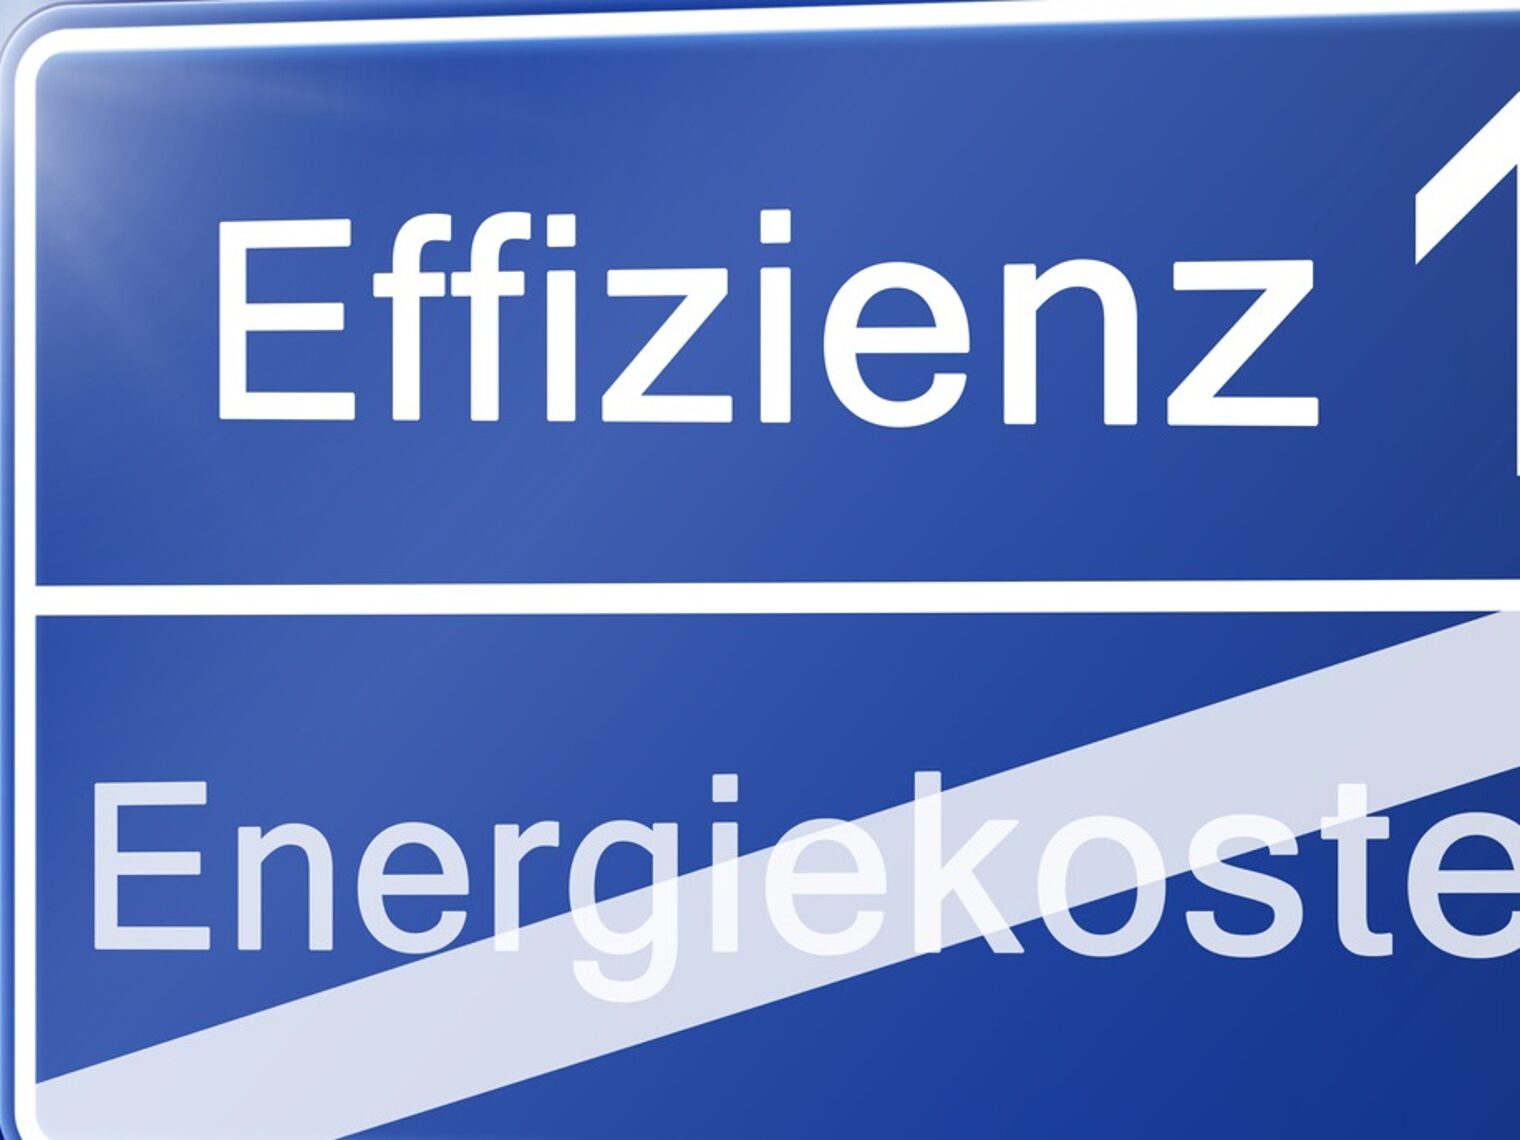 Schild Effizienz Energiekosten 7 zu 3, Effizienz, Energiekosten, Fotolia 80559830